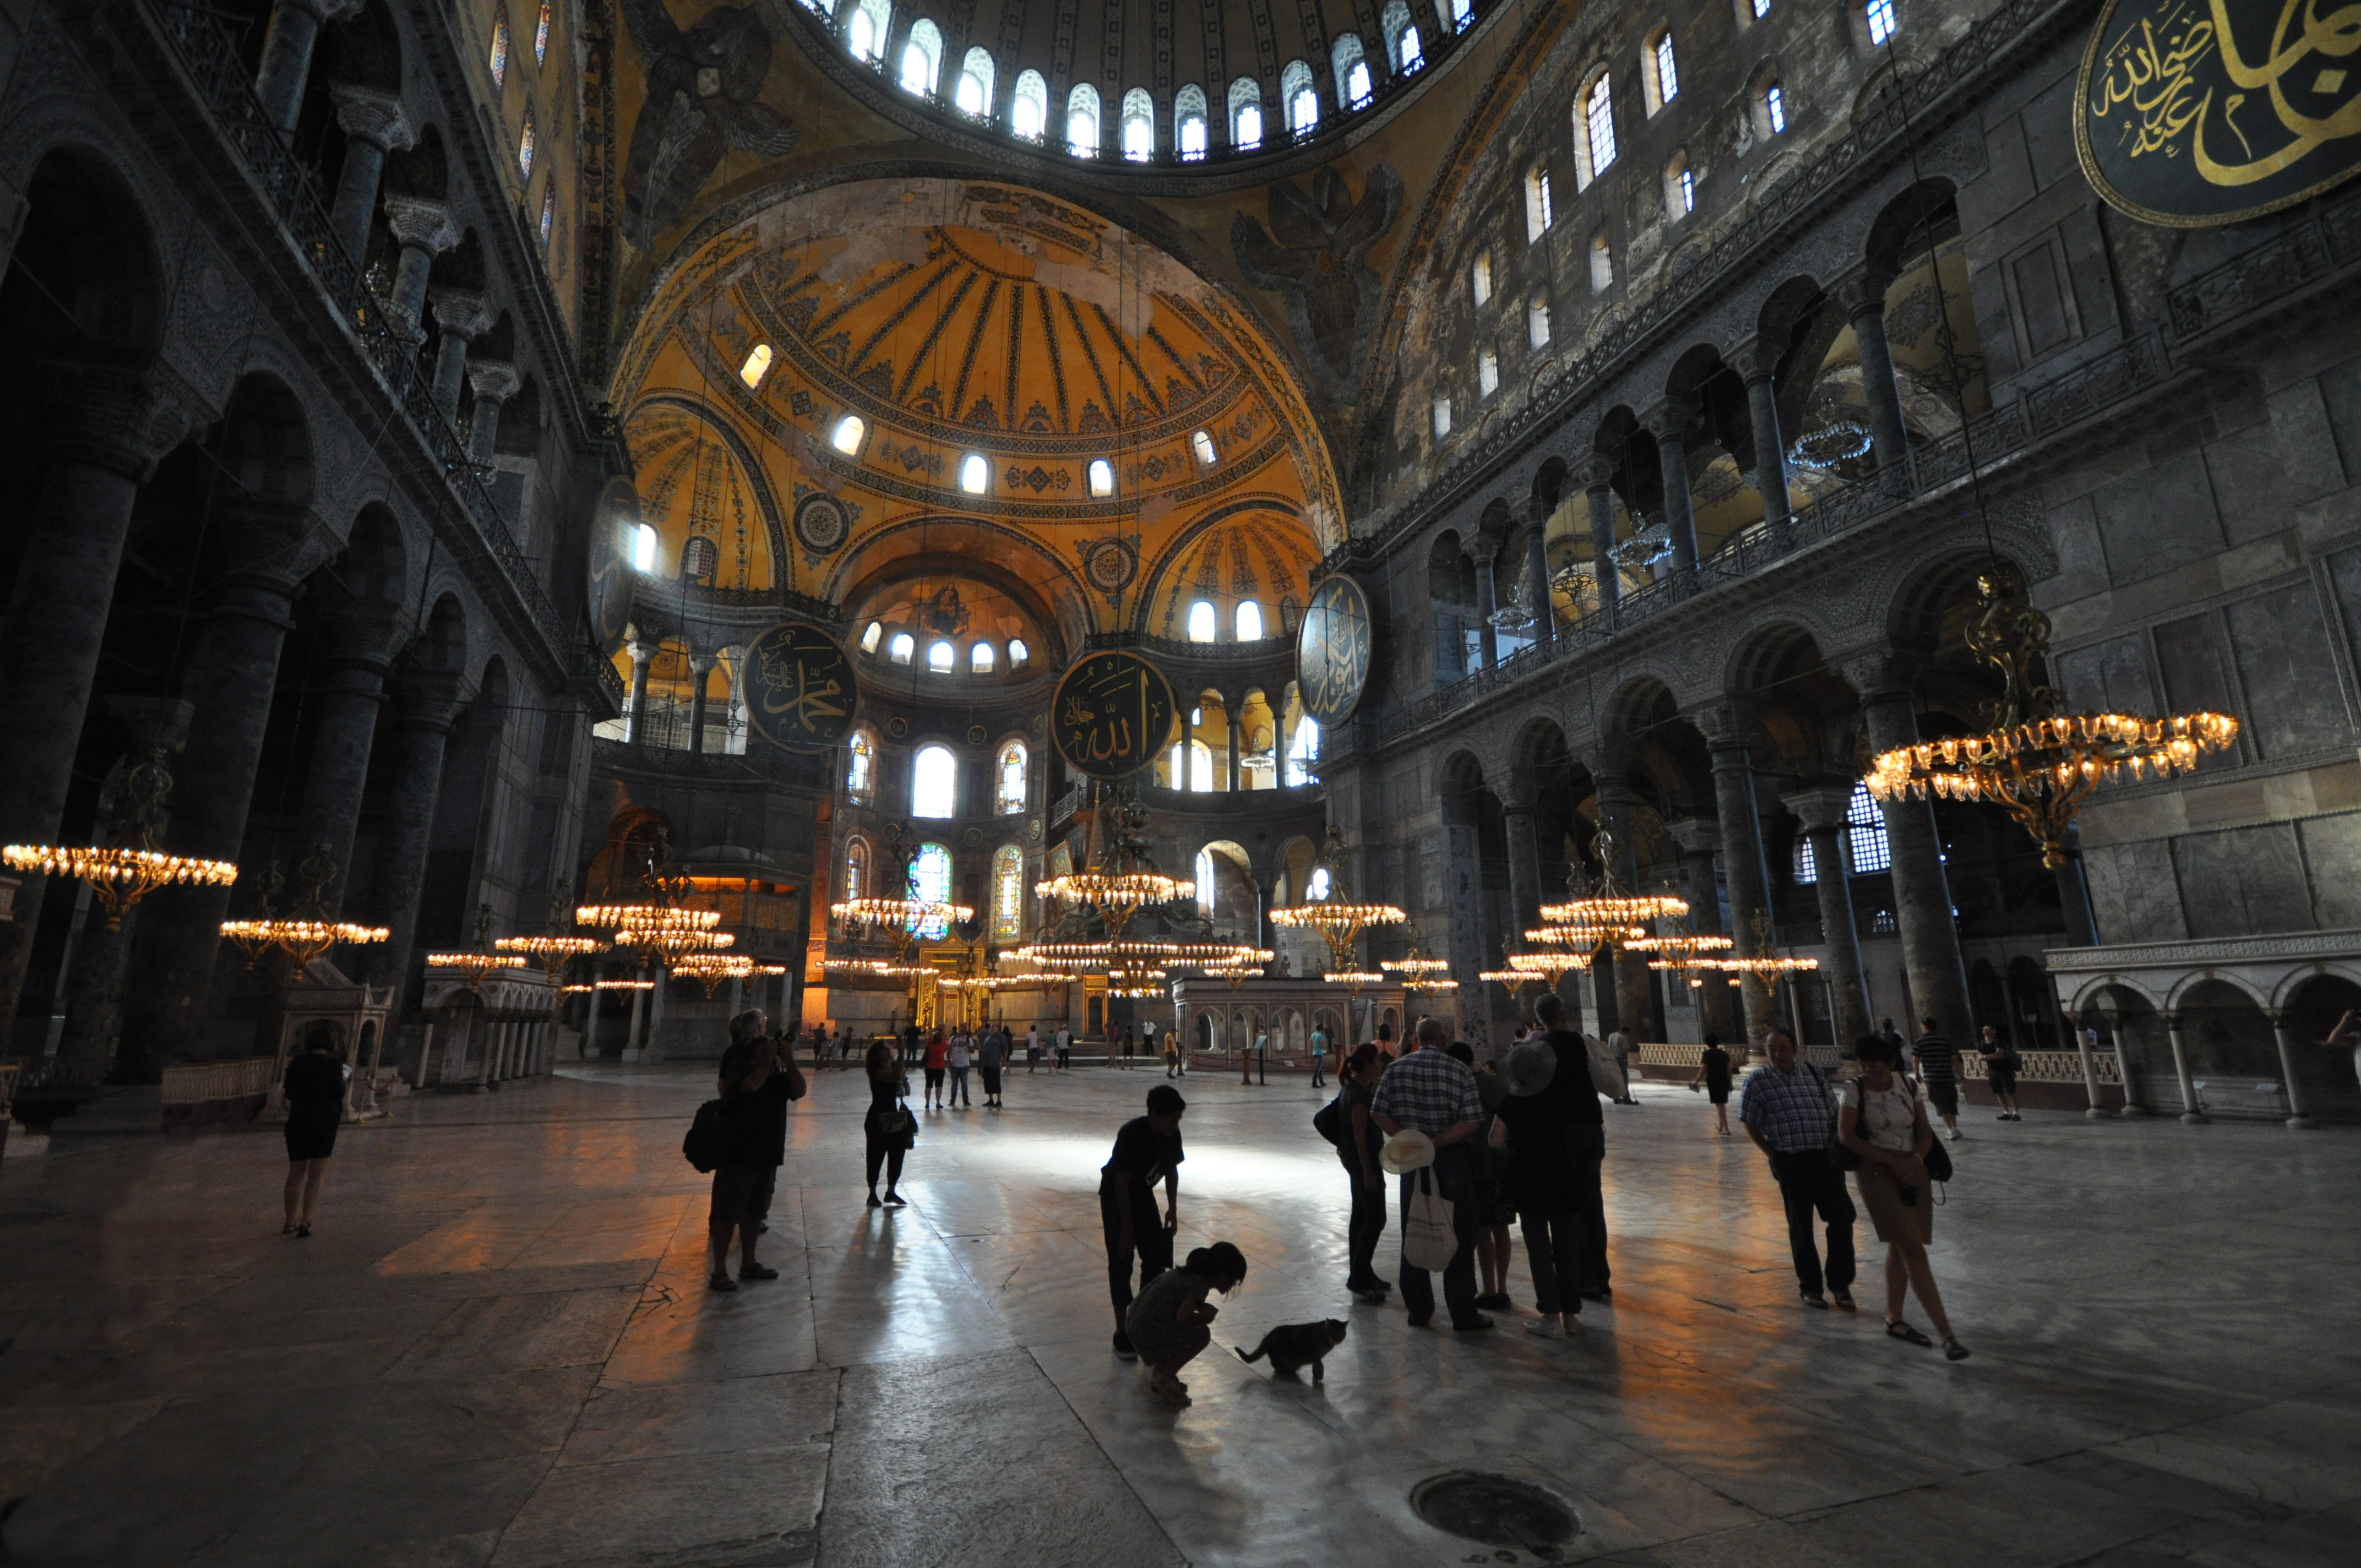 Interior shot of Hagia Sophia